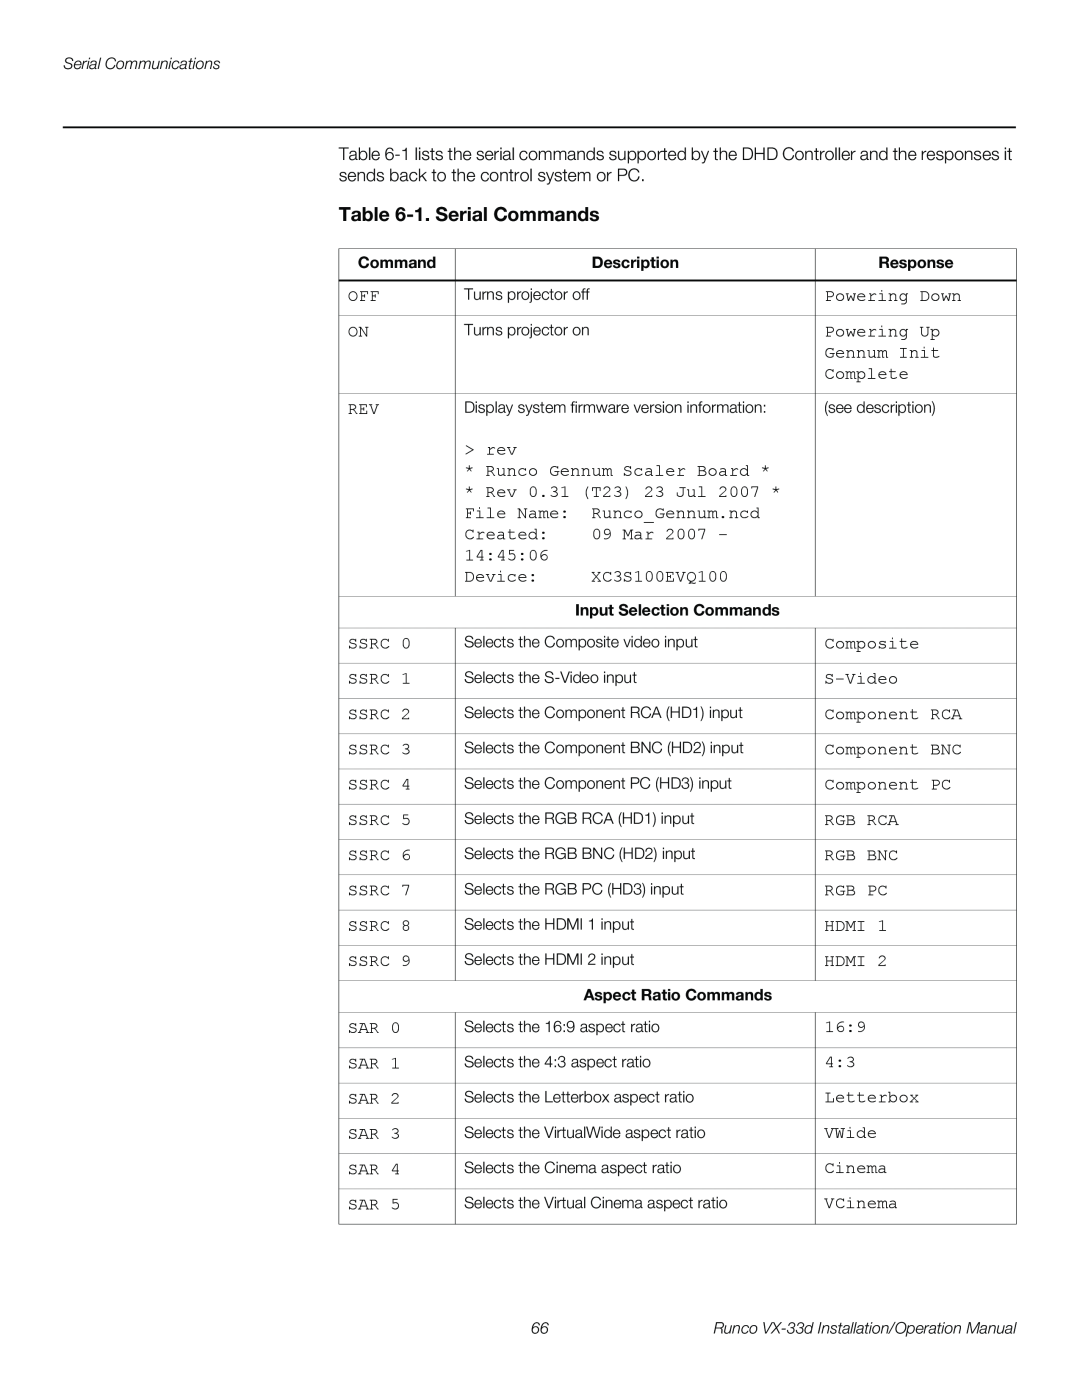 Runco VX-33D operation manual 1. Serial Commands 